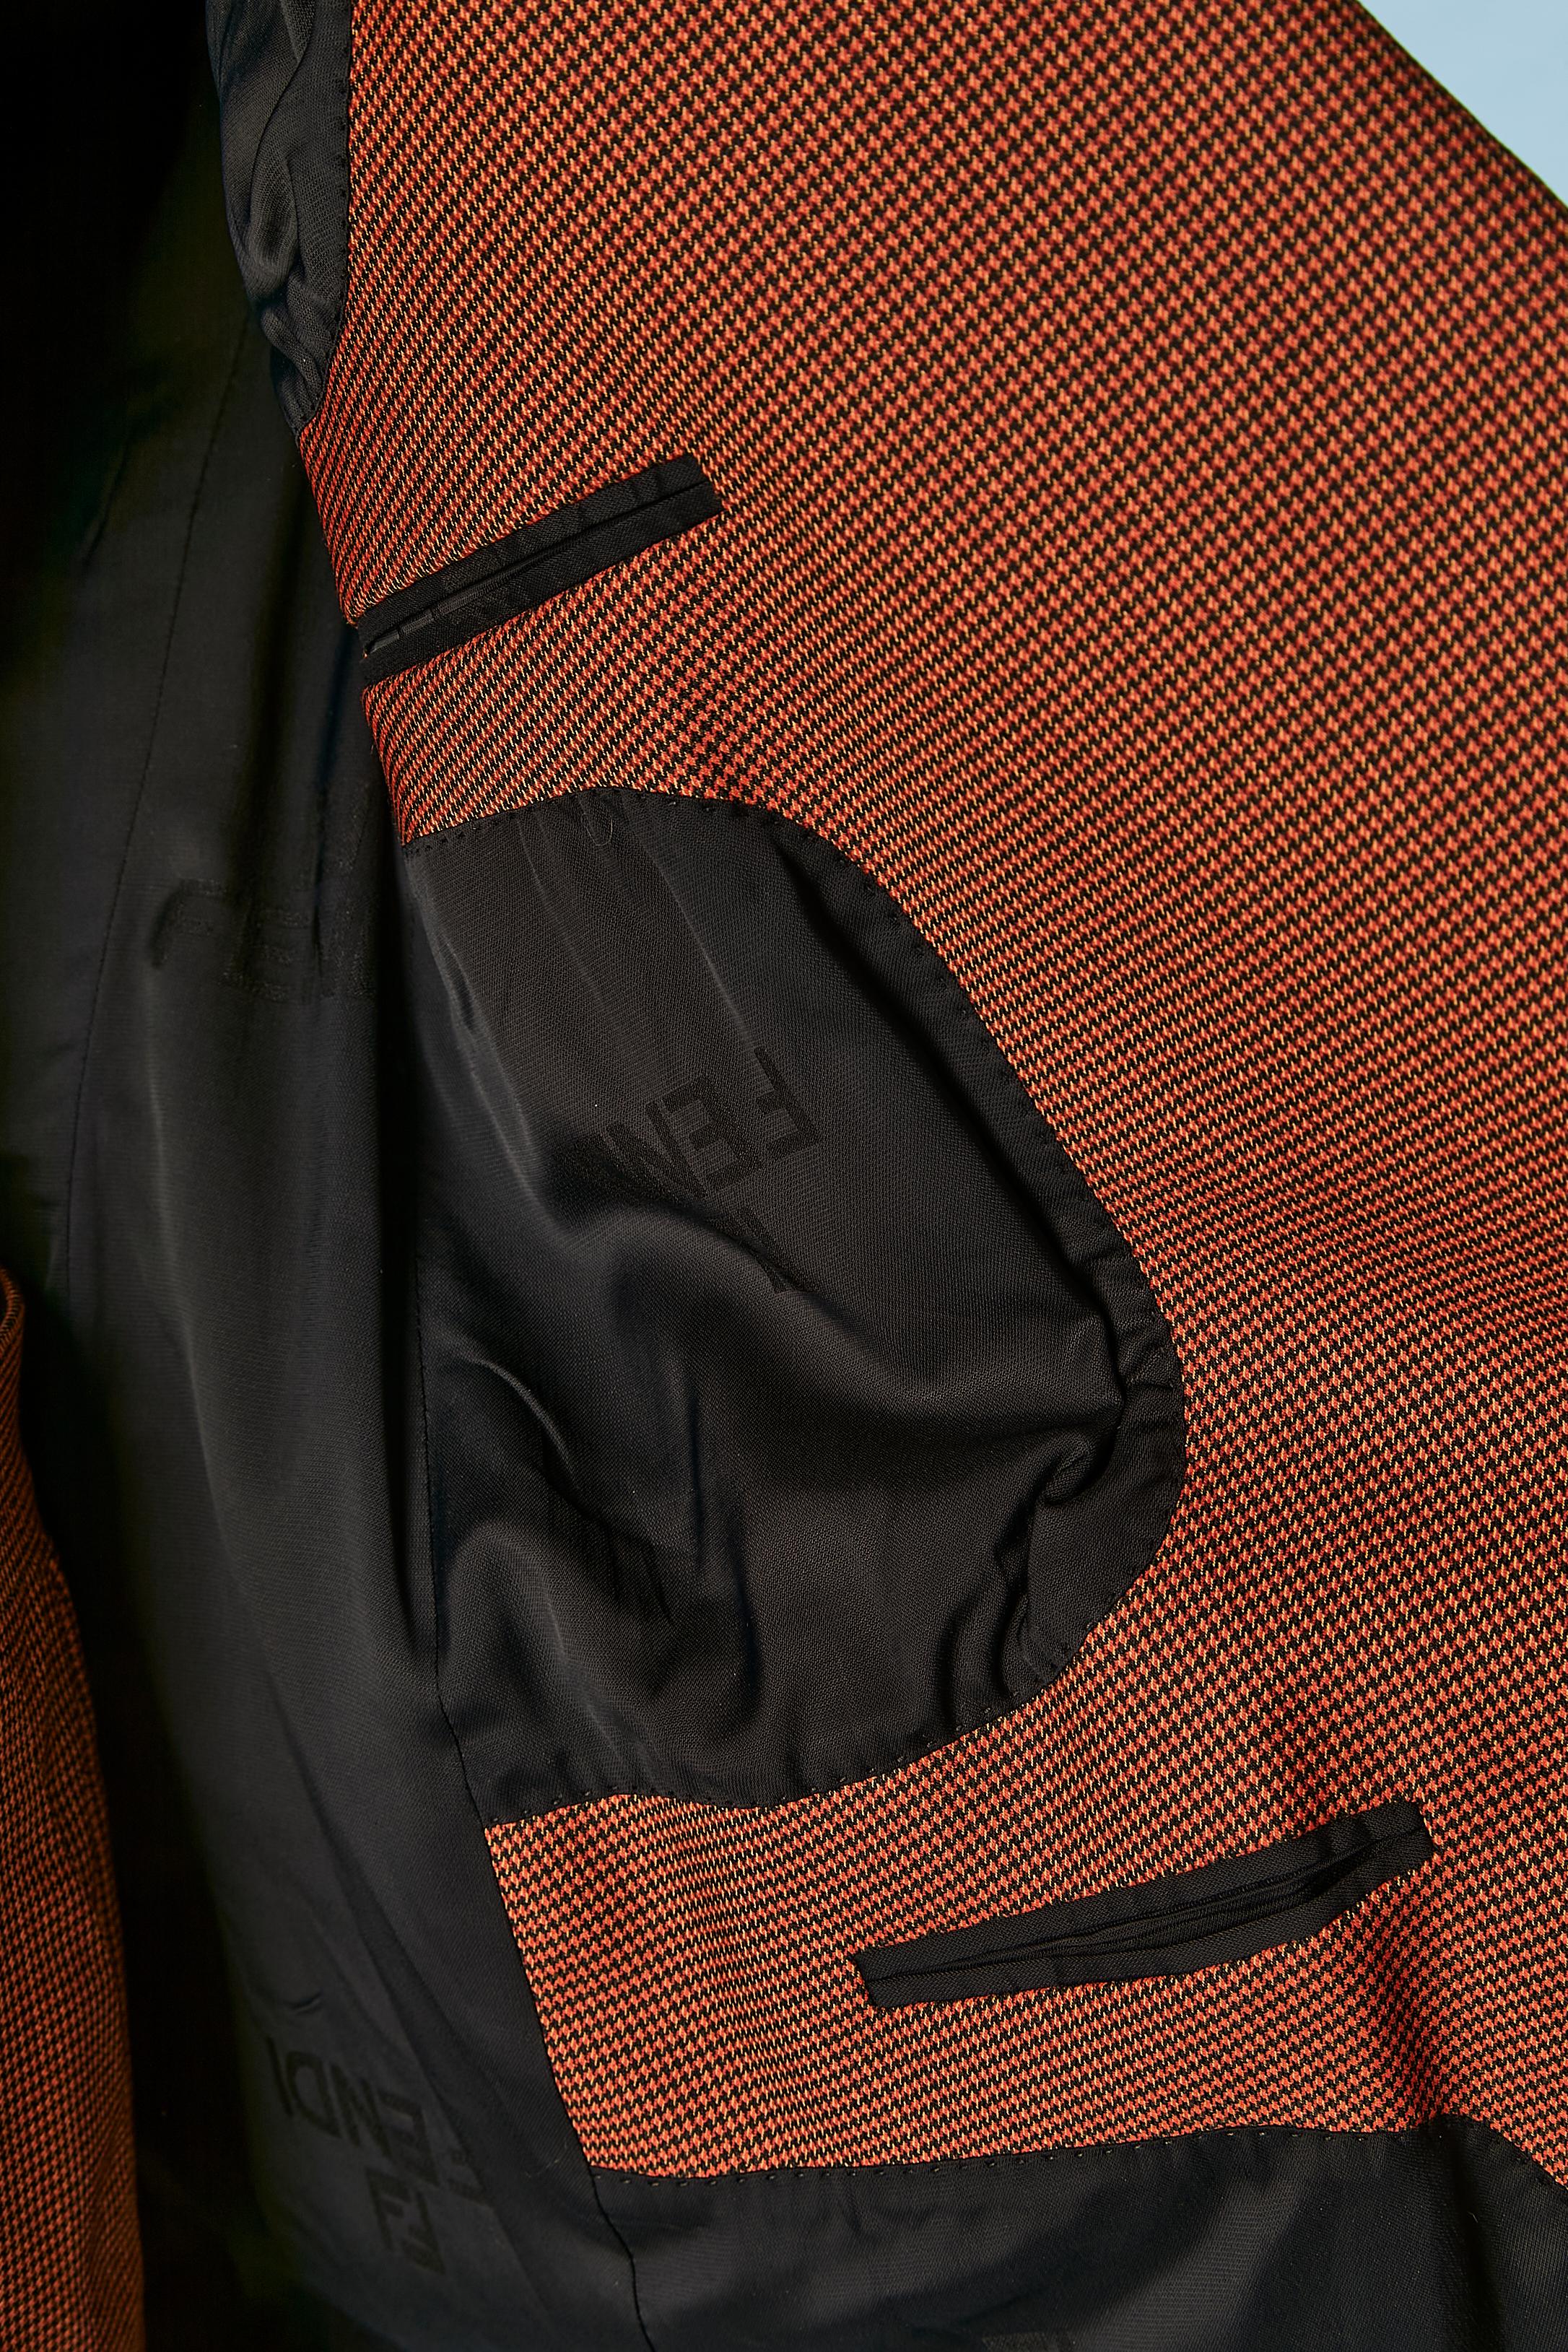 Brown and black mini Pied de poule pattern trouser-suit with fur cuffs FENDI  For Sale 5